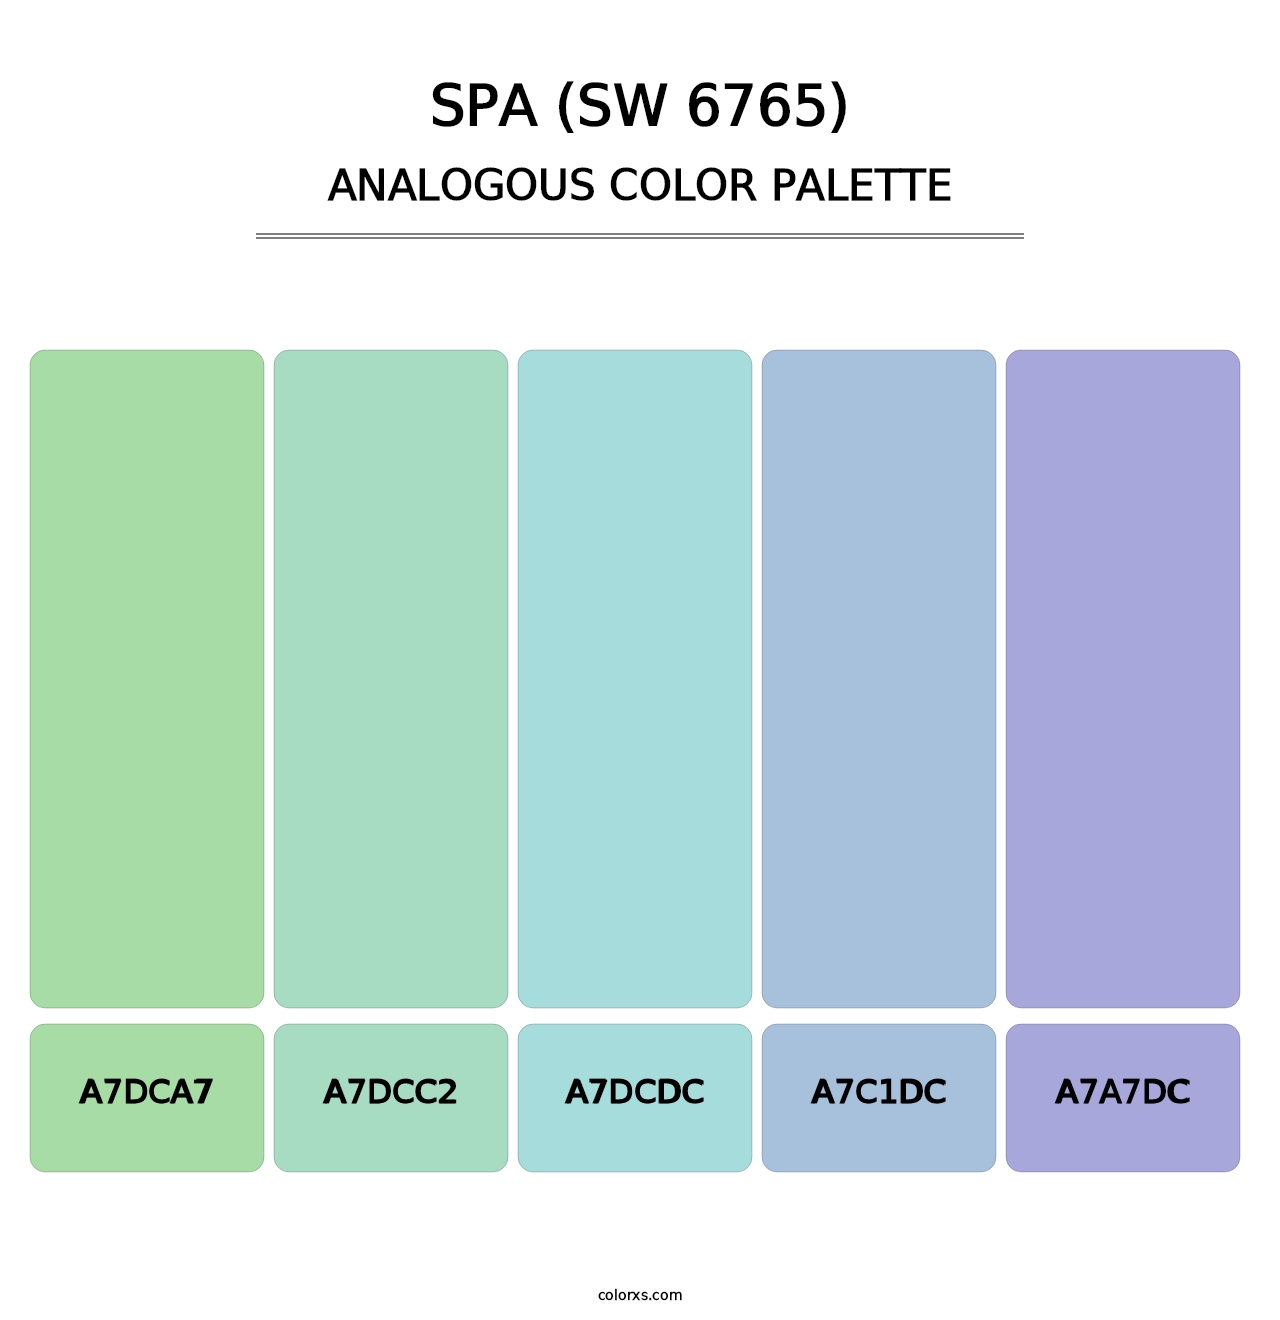 Spa (SW 6765) - Analogous Color Palette